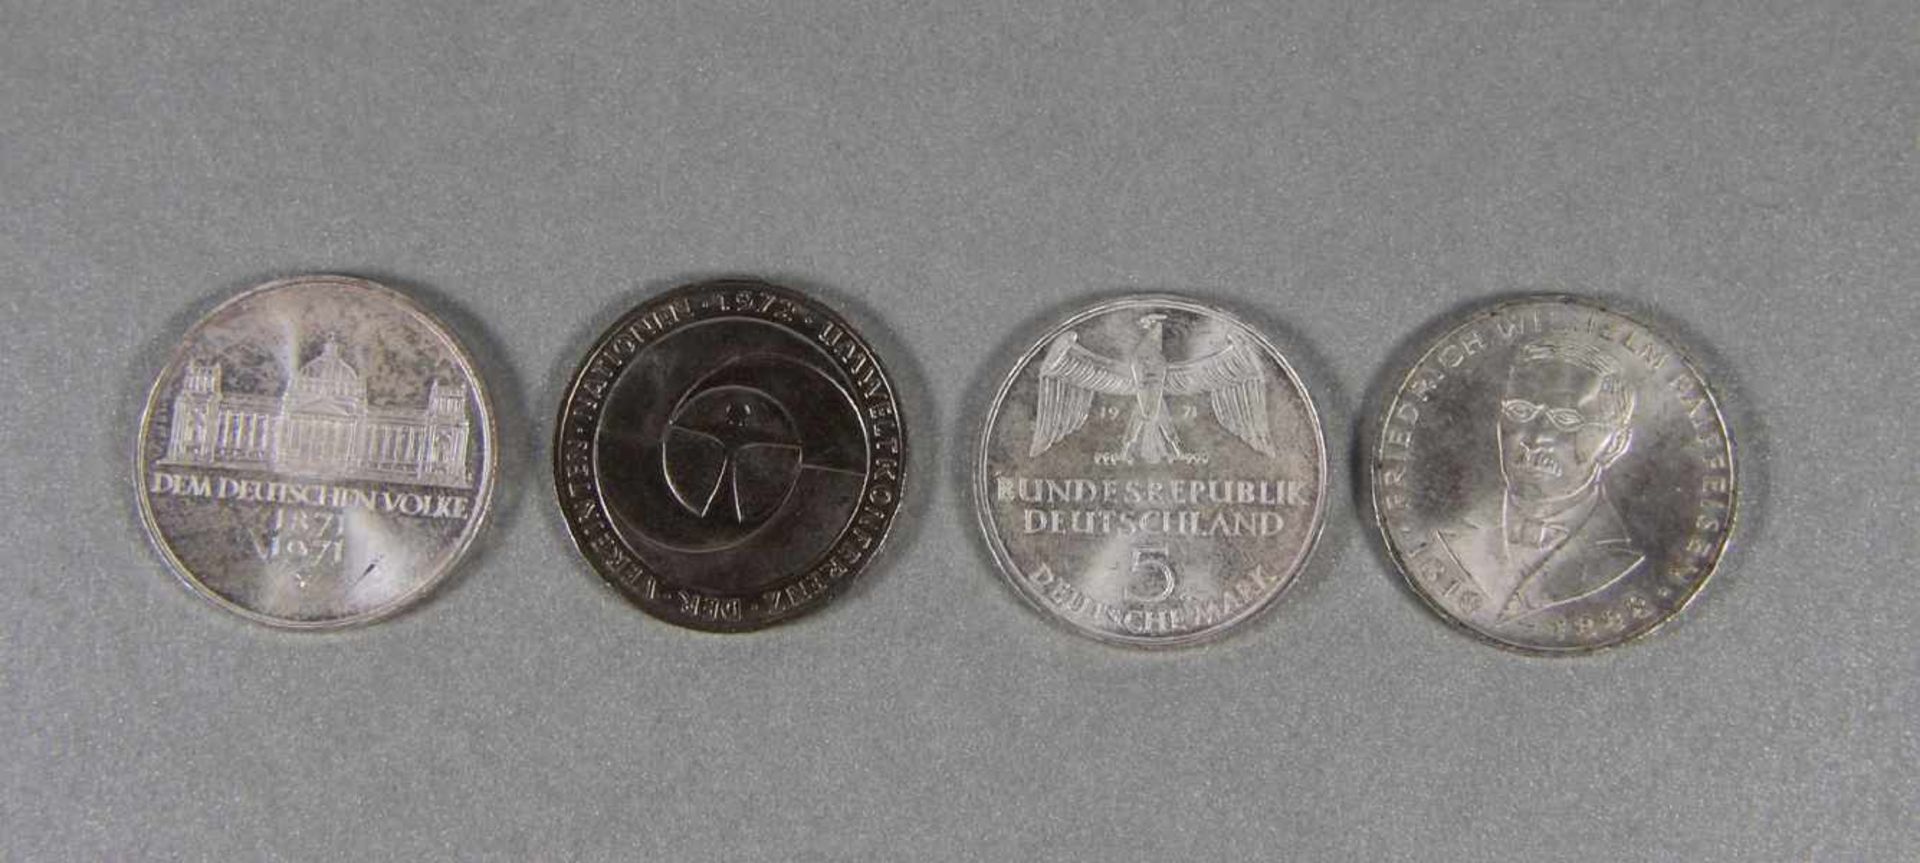 Konvolut 5 DM-Münzen4 Stk. 5 DM-Münzen, 3mal 625er Silber, best. aus 2 mal 1971 Deutsche